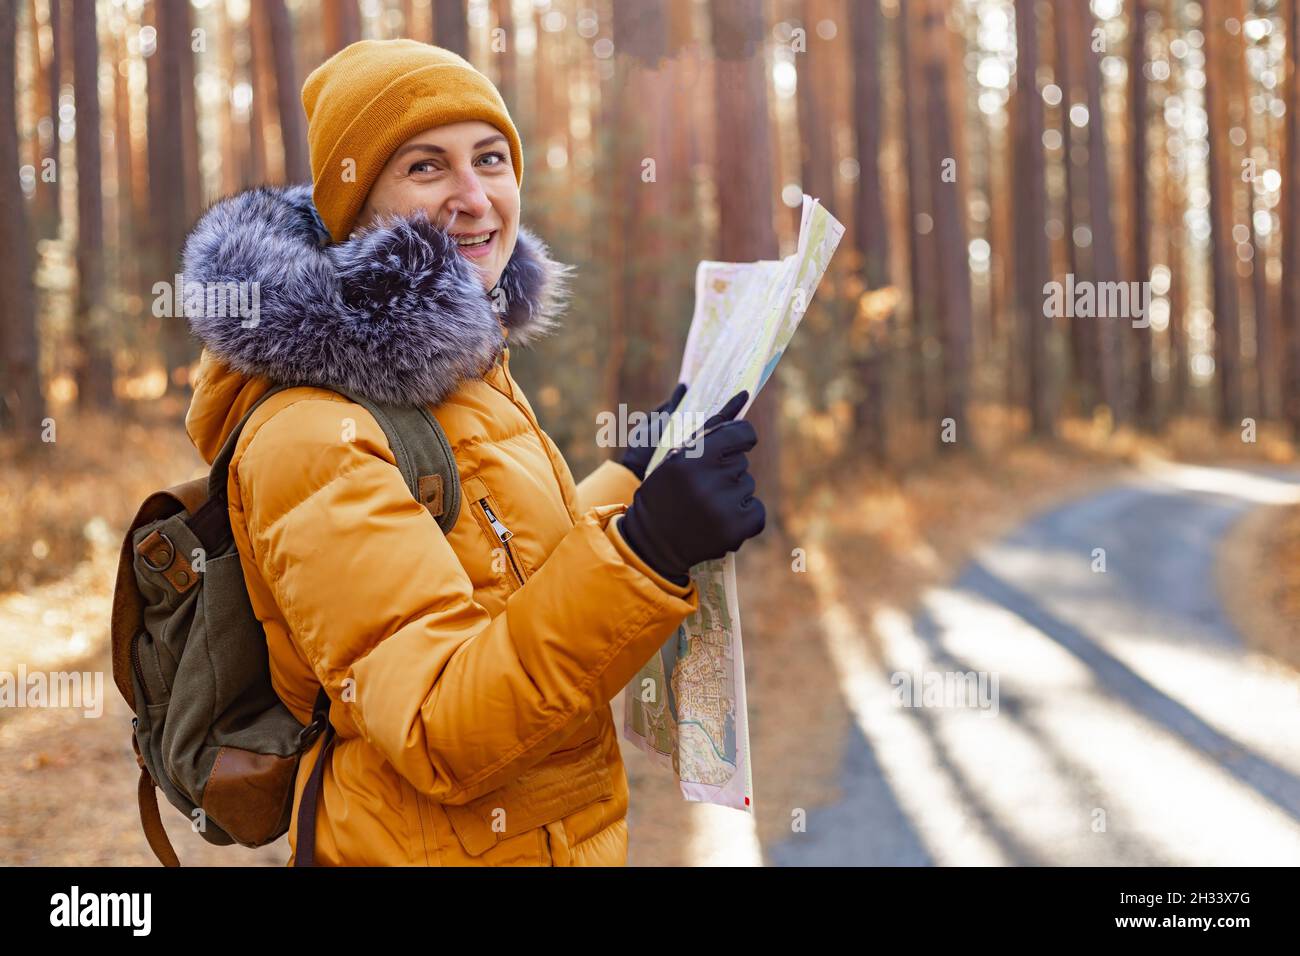 Jeune femme souriante dans une veste chaude orange.Une femme d'origine ethnique caucasienne attrayante marche dans le parc avec un sac à dos.Elle regarde la carte.Randonnée en t Banque D'Images